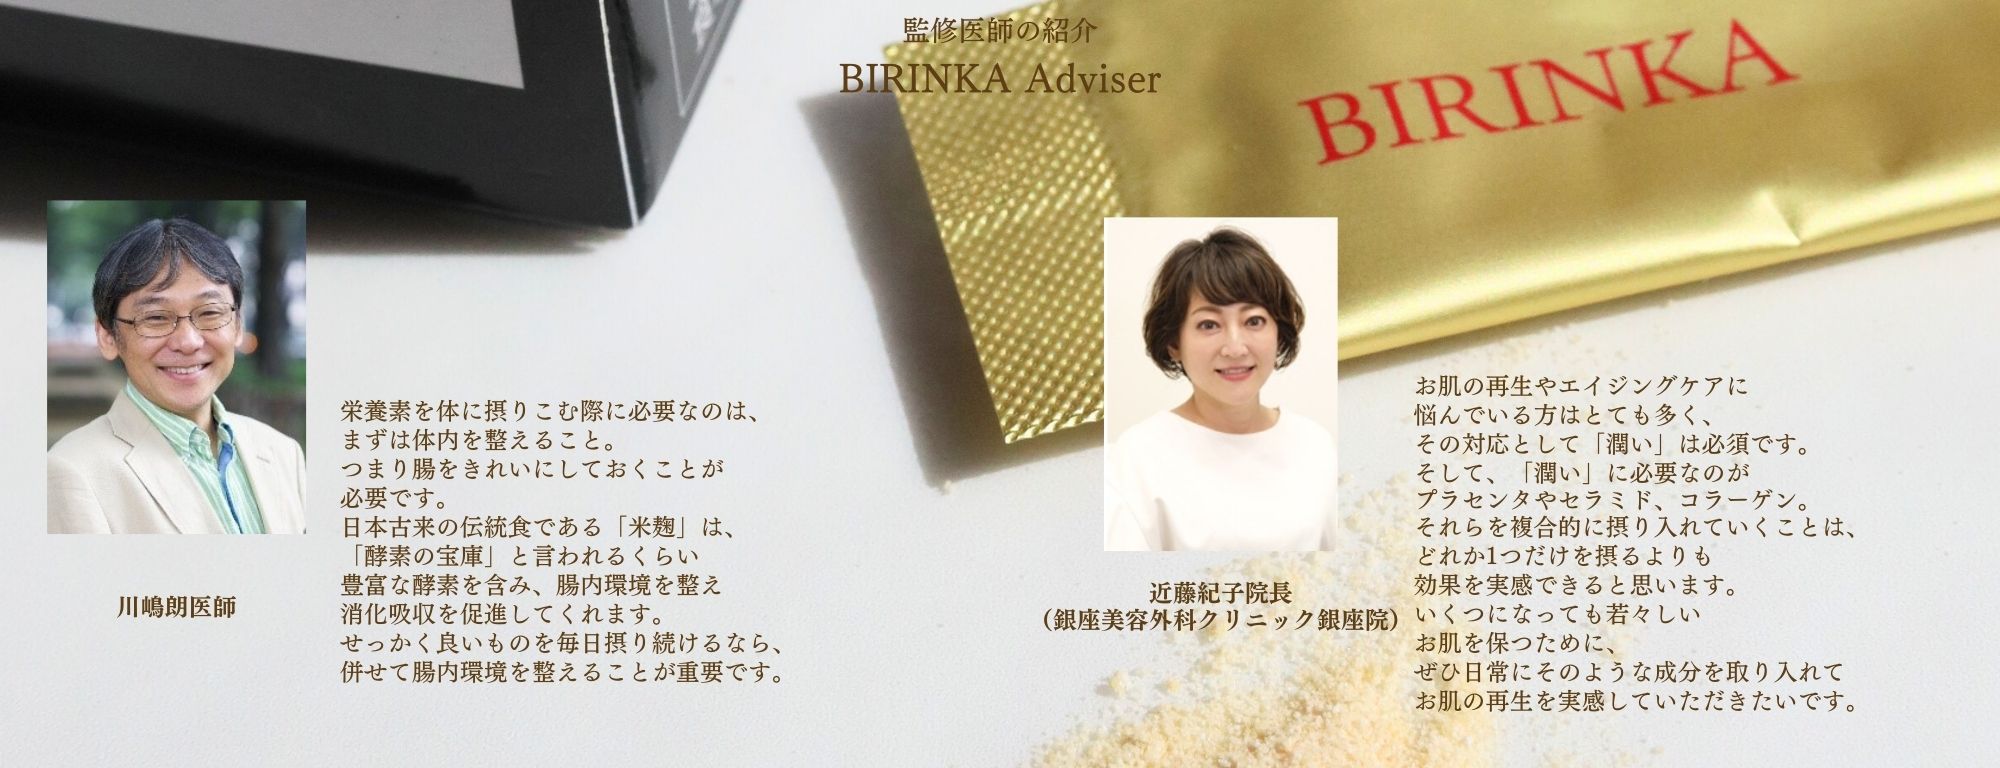 BIRINKA美凛華は医師監修のもと開発されました。
川嶋朗医師、近藤紀子医師